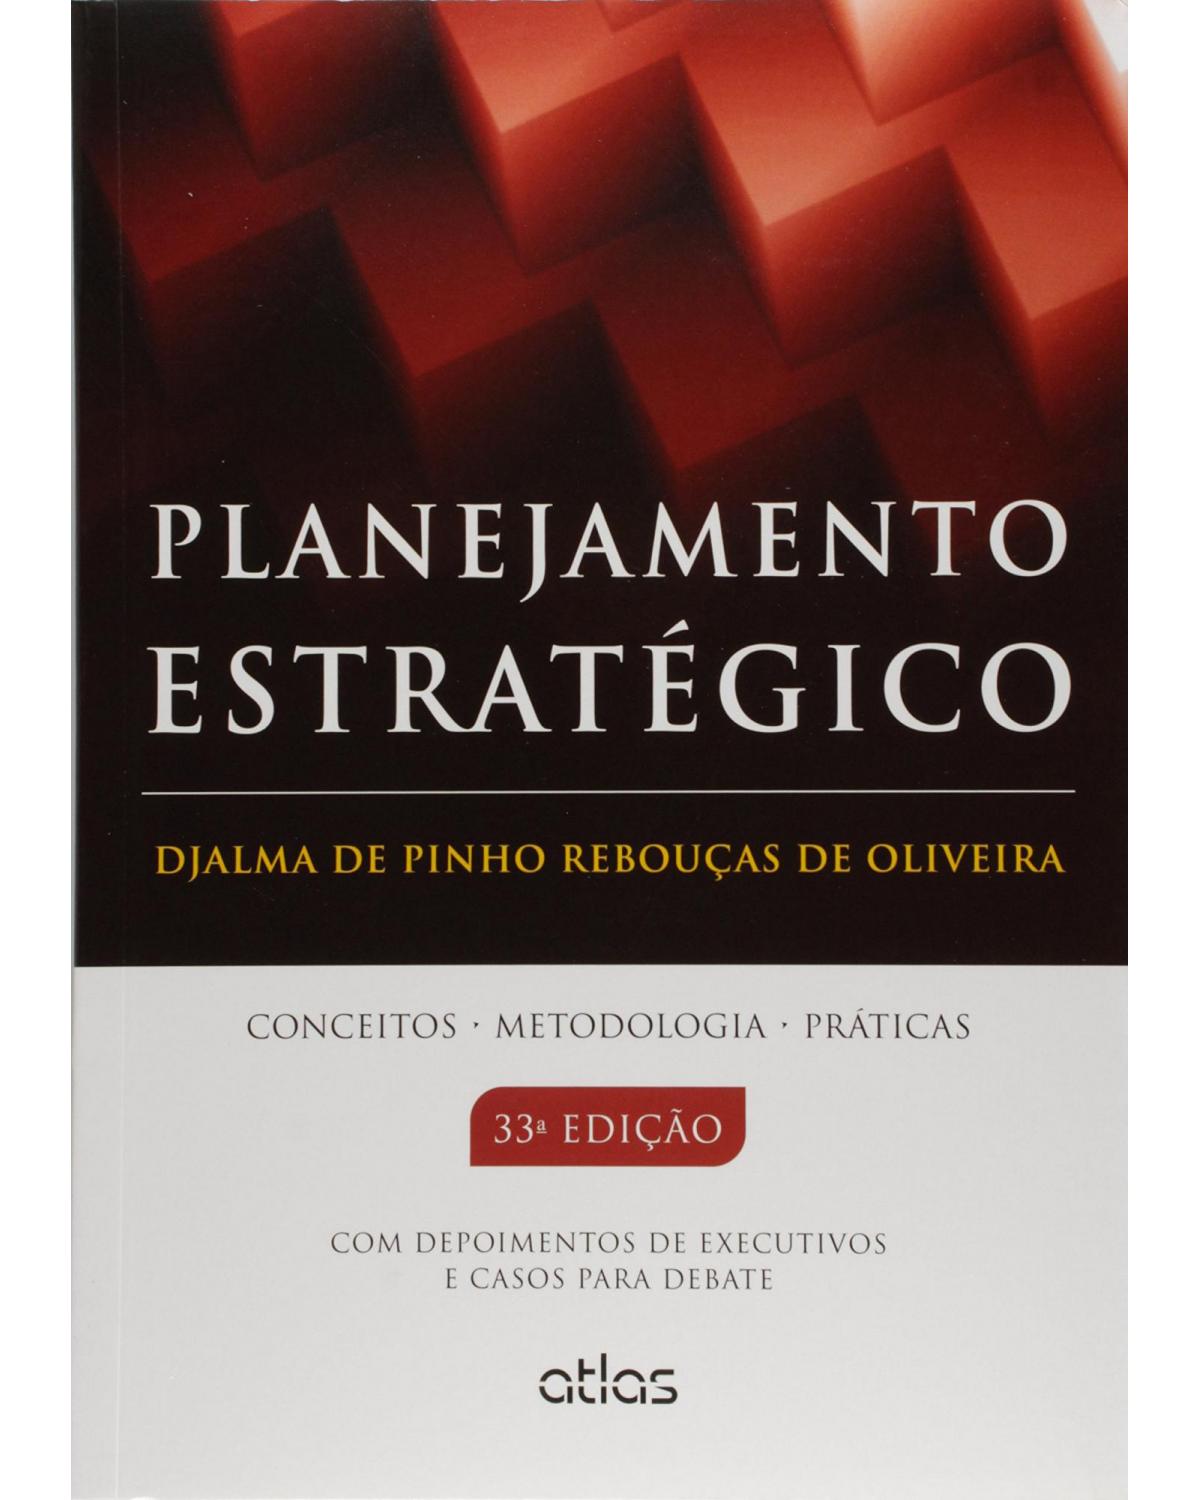 Planejamento estratégico - Conceitos, metodologia, práticas - 33ª Edição | 2015